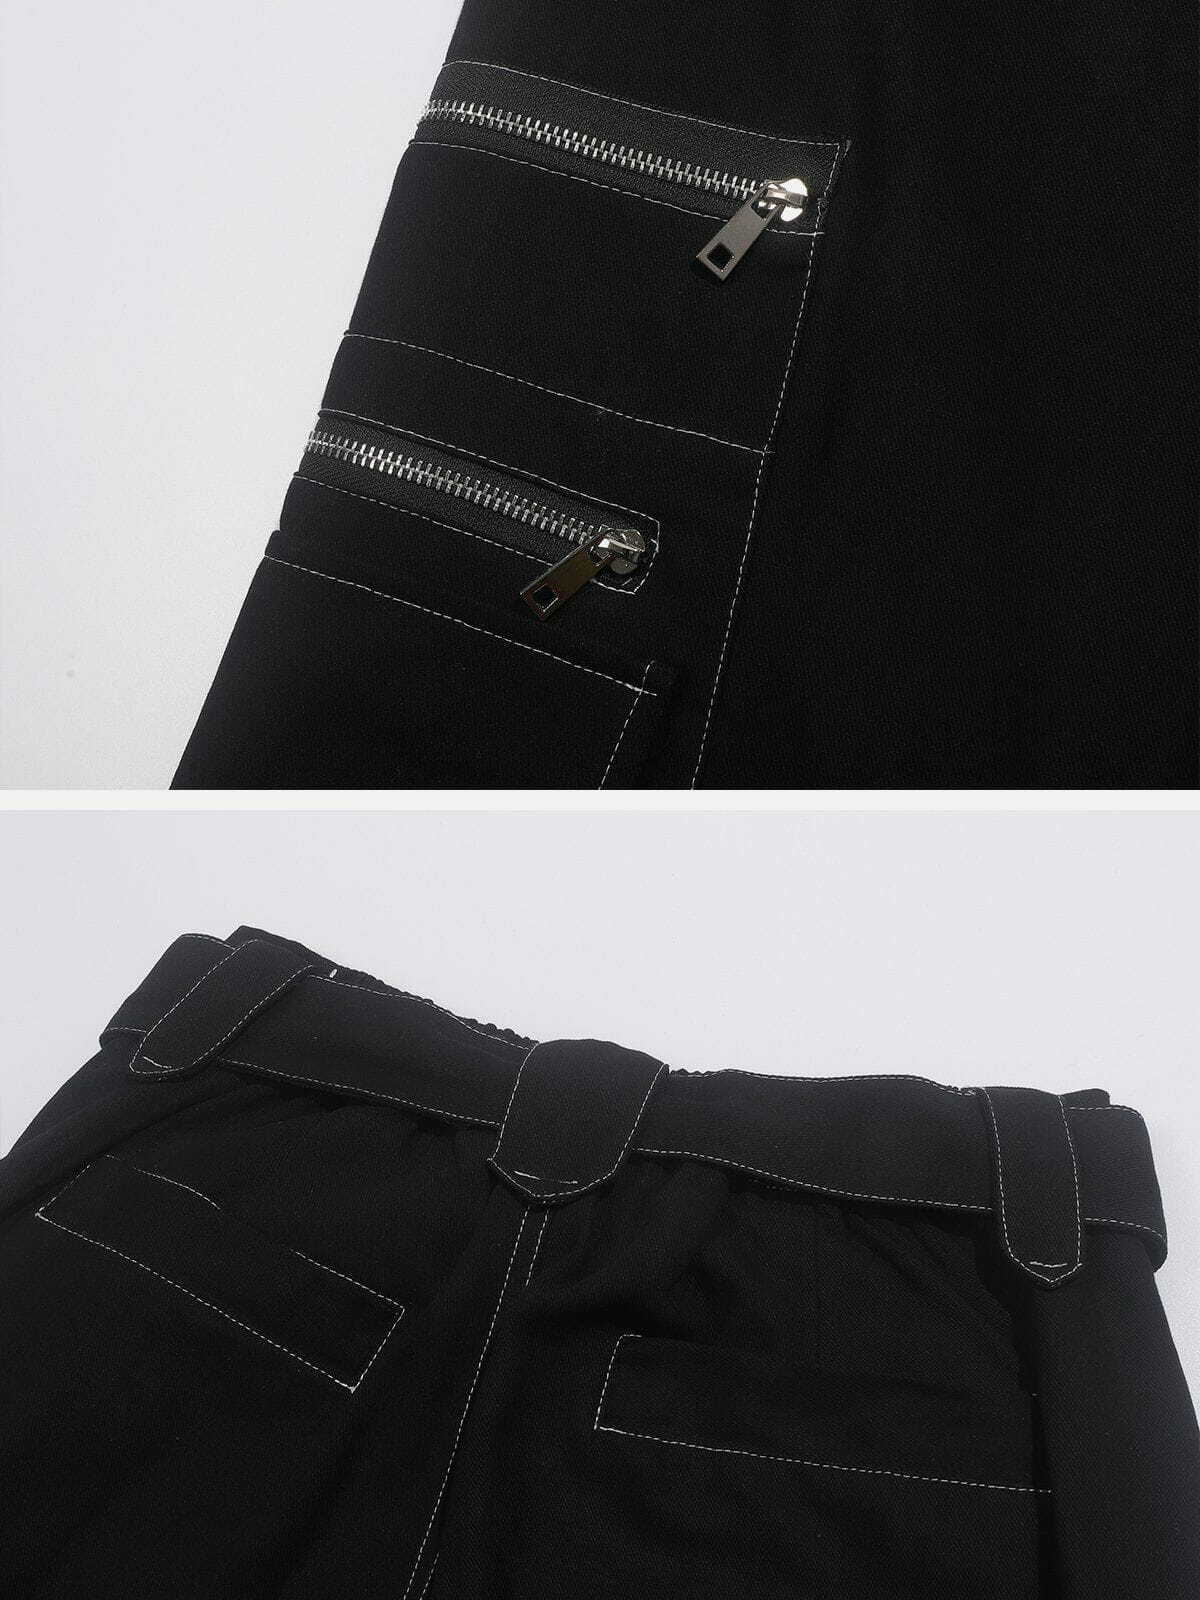 zipup cargo pants edgy streetwear essential 5573